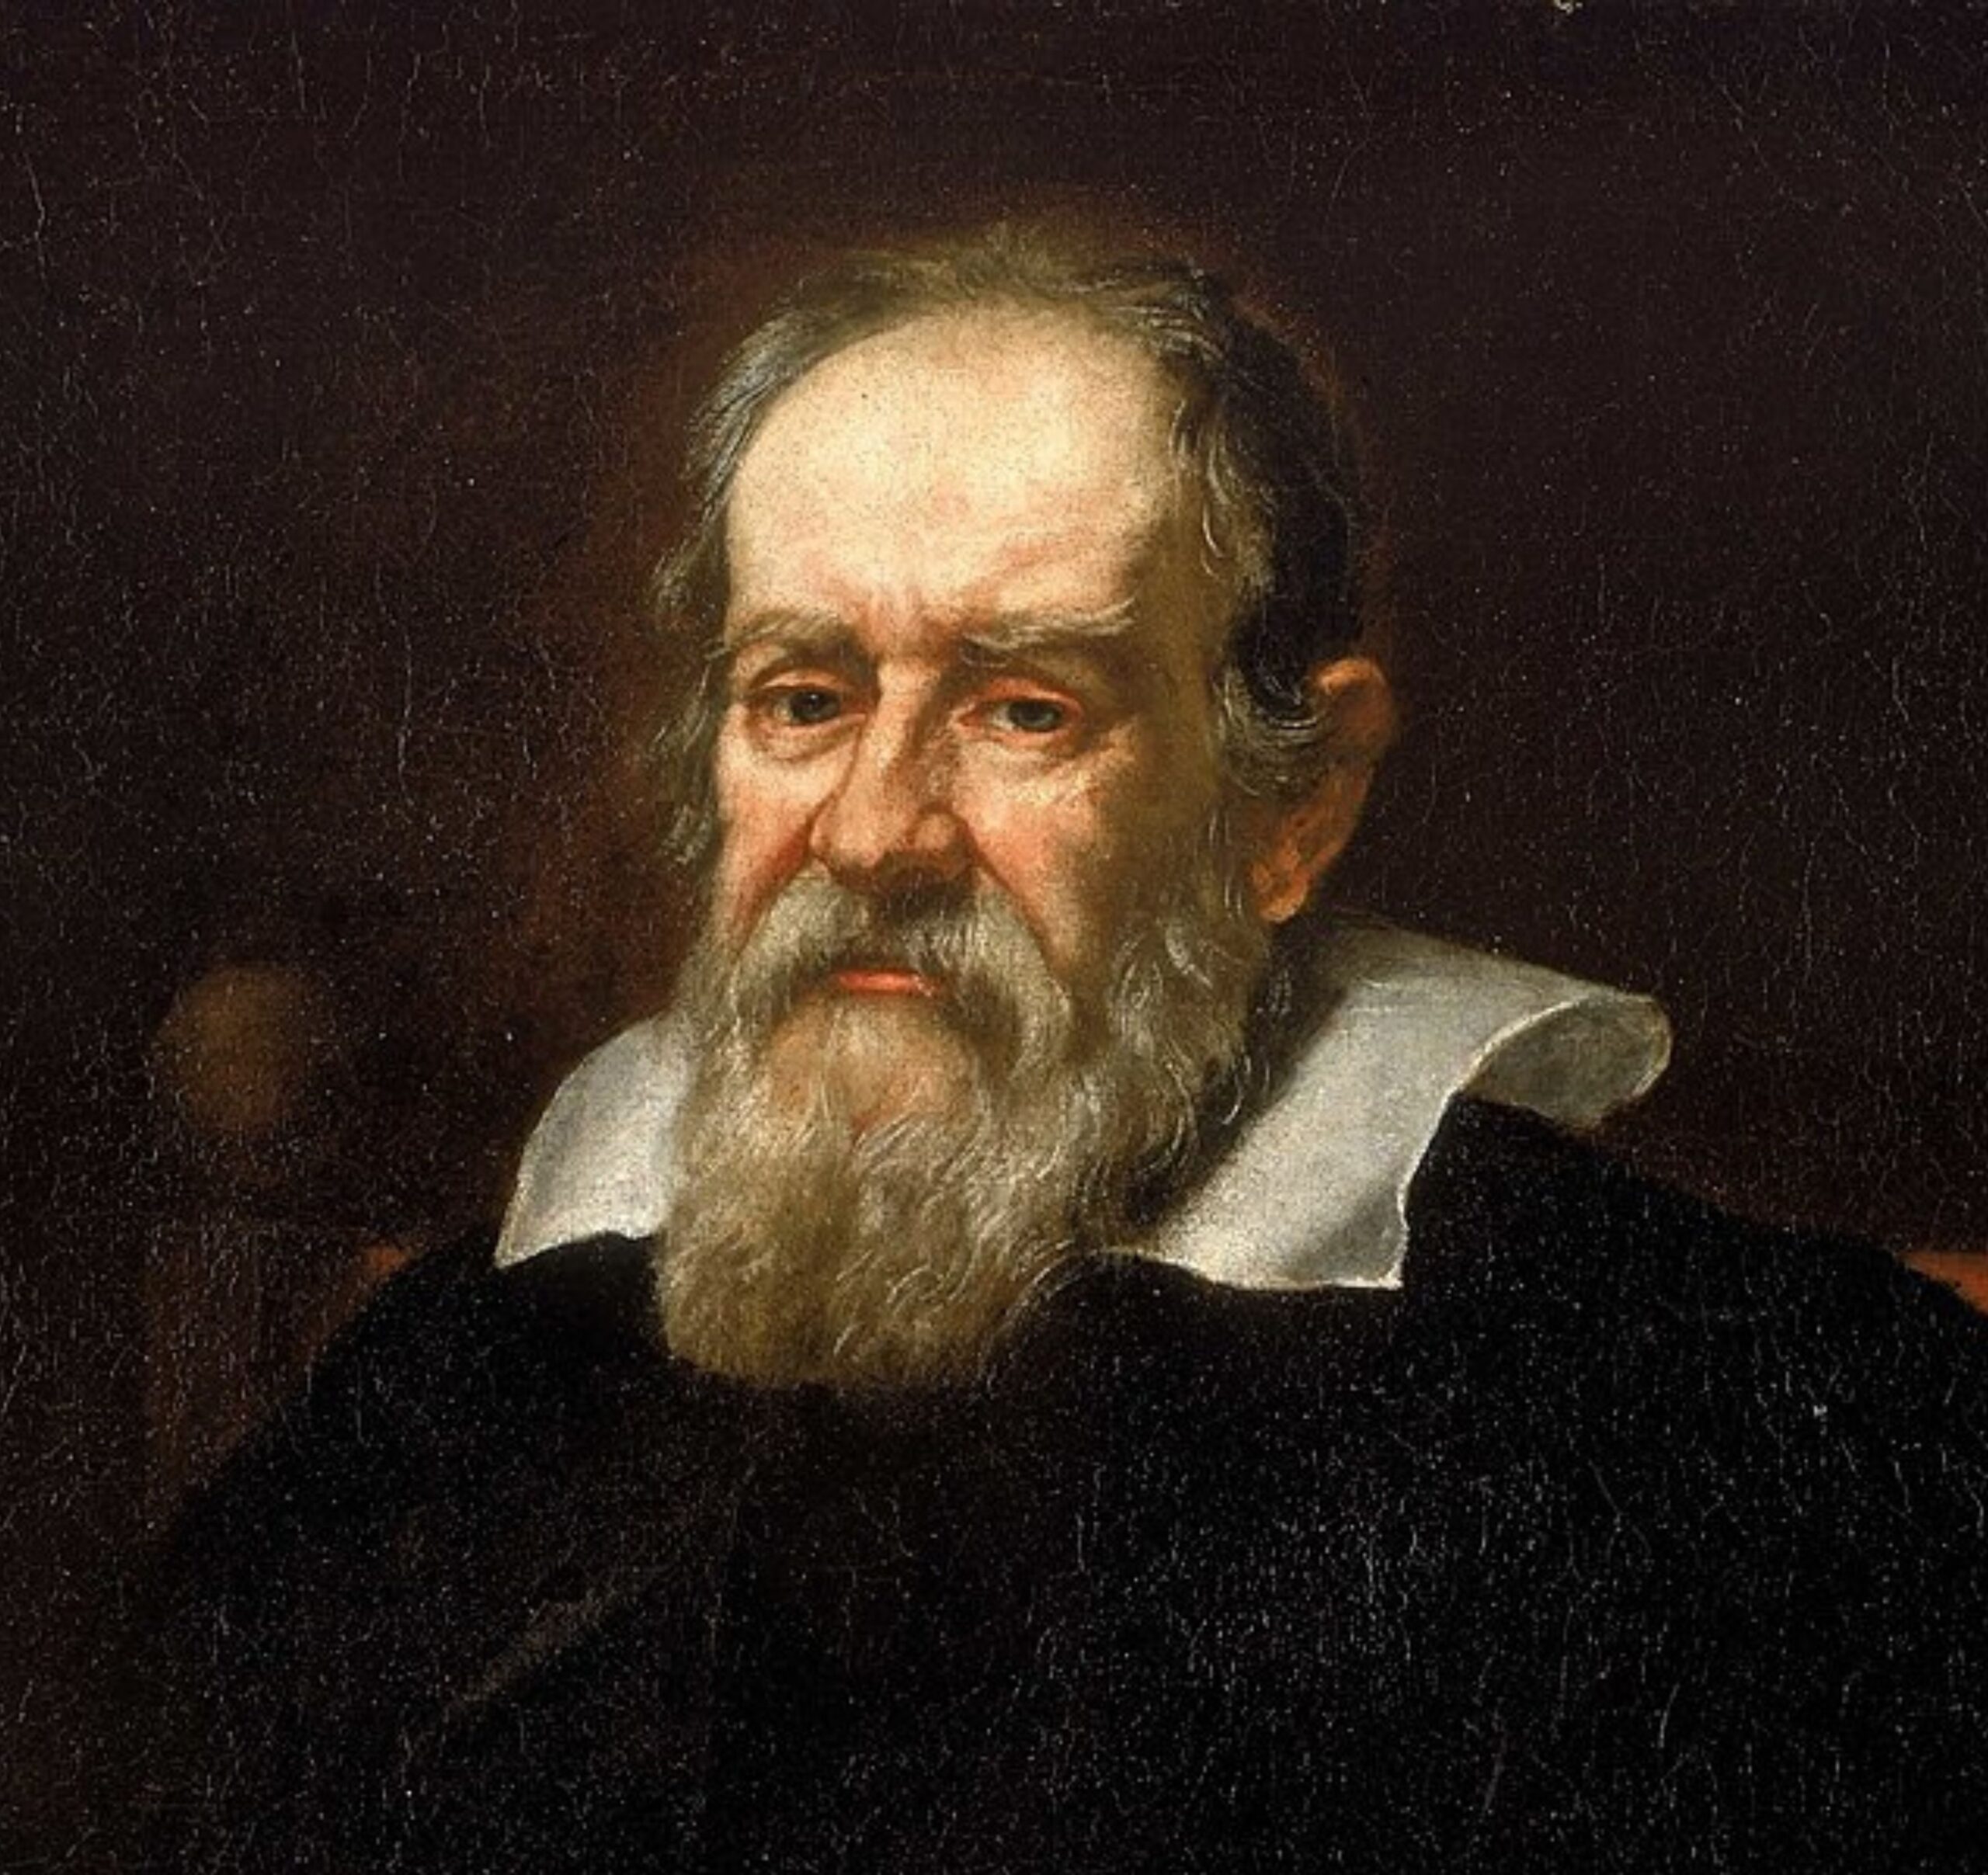 The story of Galileo Galilei